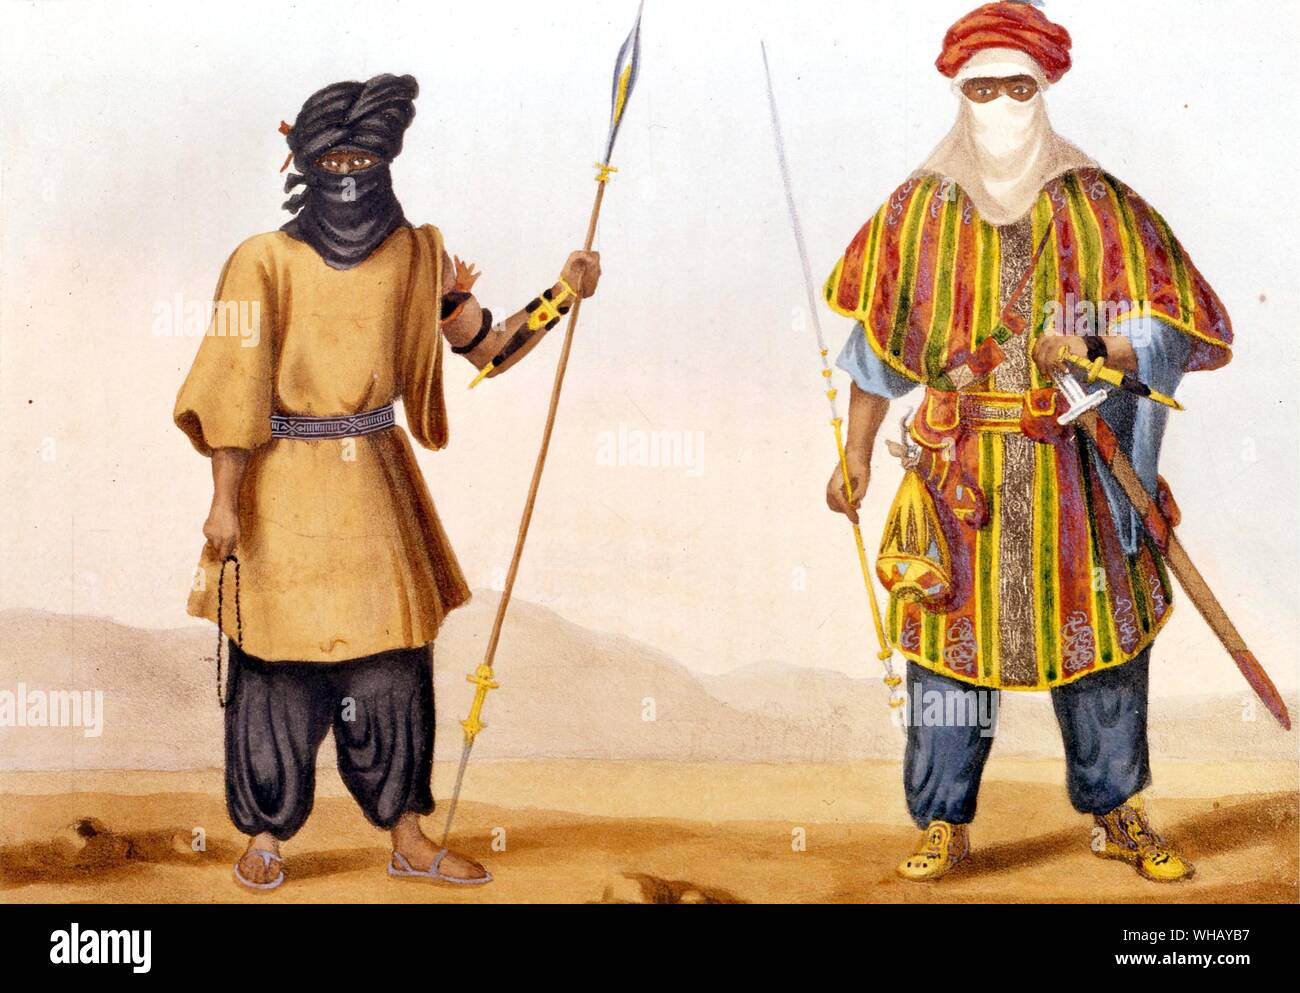 Tuareg. Die Tuareg (manchmal Touareg in Französisch, oder Twareg in Englisch geschrieben) sind ein Berber ethnischen Gruppe oder Nation. Tuareg ist ein Name, der ihnen durch frühe Forscher und Historiker angewandt wurde, aber sie nennen sich verschiedentlich, Kel Tamashek, Kel Tamajaq (Lautsprecher von TAMASHEK), Imouhar, Imuhagh, Imazaghan oder Imashaghen (kostenlos). Die Tuareg identifizieren sich auch mit dem Konzept Tamust, "Die Nation". Die Tuareg sind heute meist in Westafrika gefunden, aber, wie viele in Nordafrika, nachdem Nomaden wurden in der Sahara. Die African Adventure - eine Geschichte von Afrikas Stockfoto